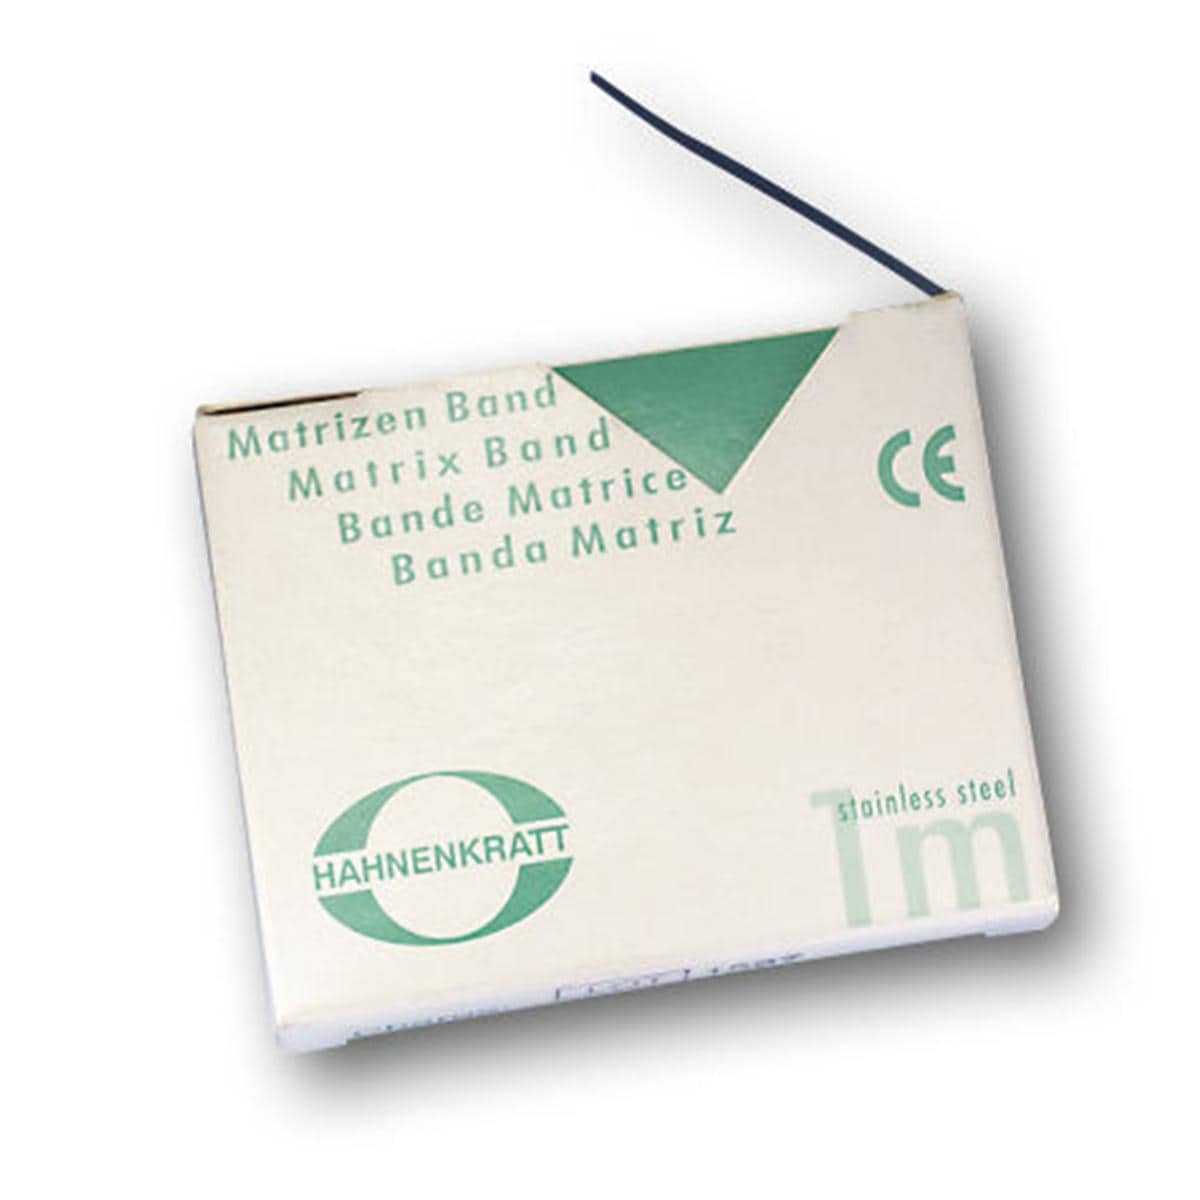 Matrizenband Hahnenkratt - Rolle 10 m - Breite 5 mm, Stärke 0,05 mm